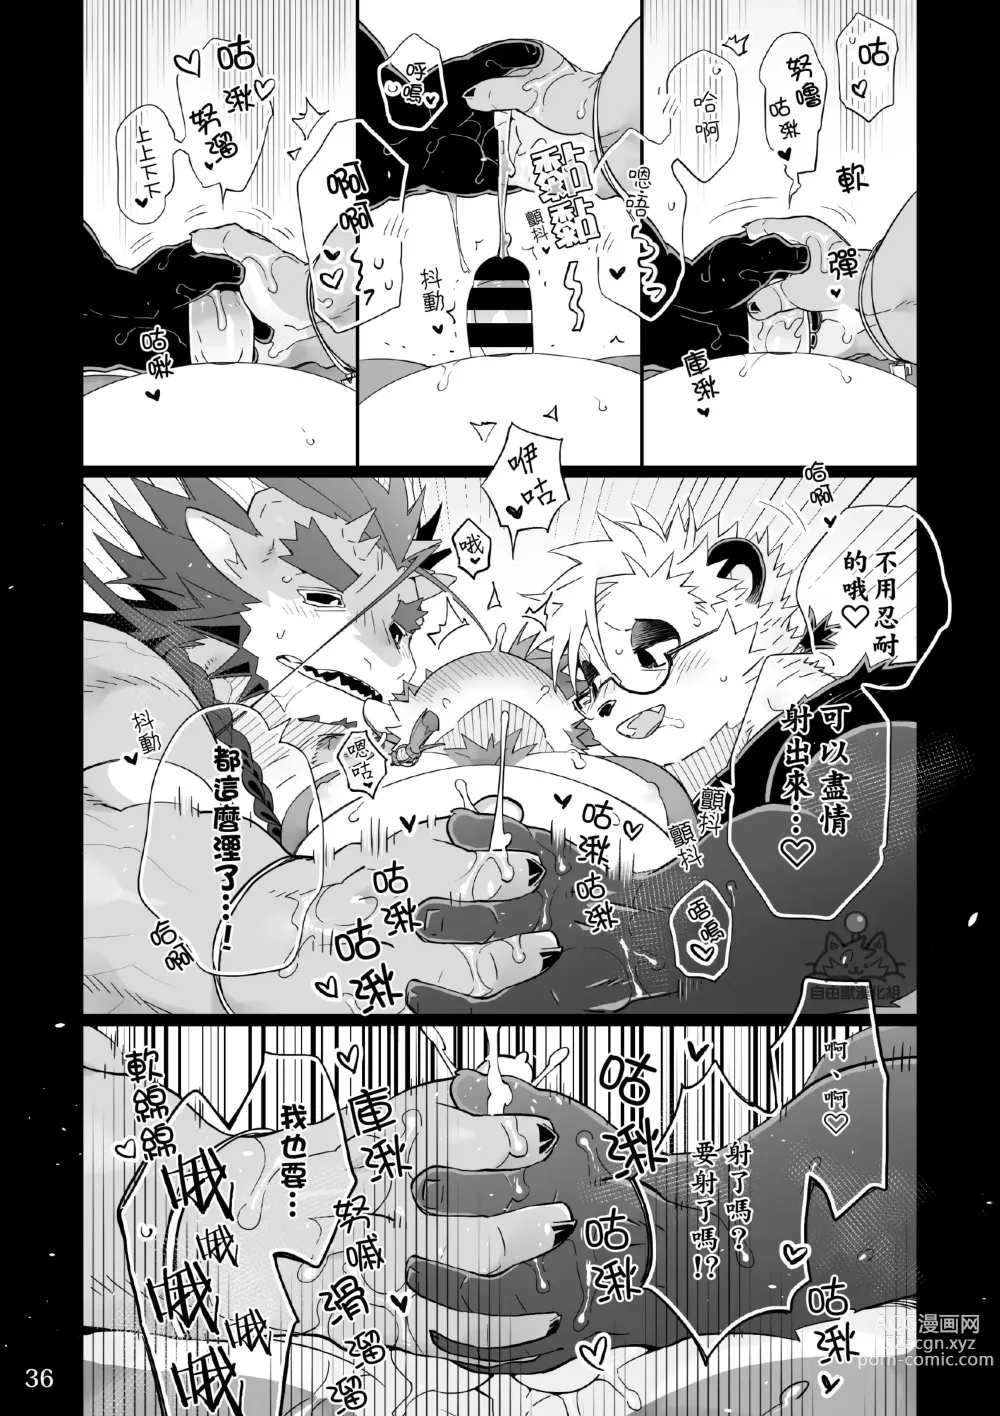 Page 35 of doujinshi Utopia